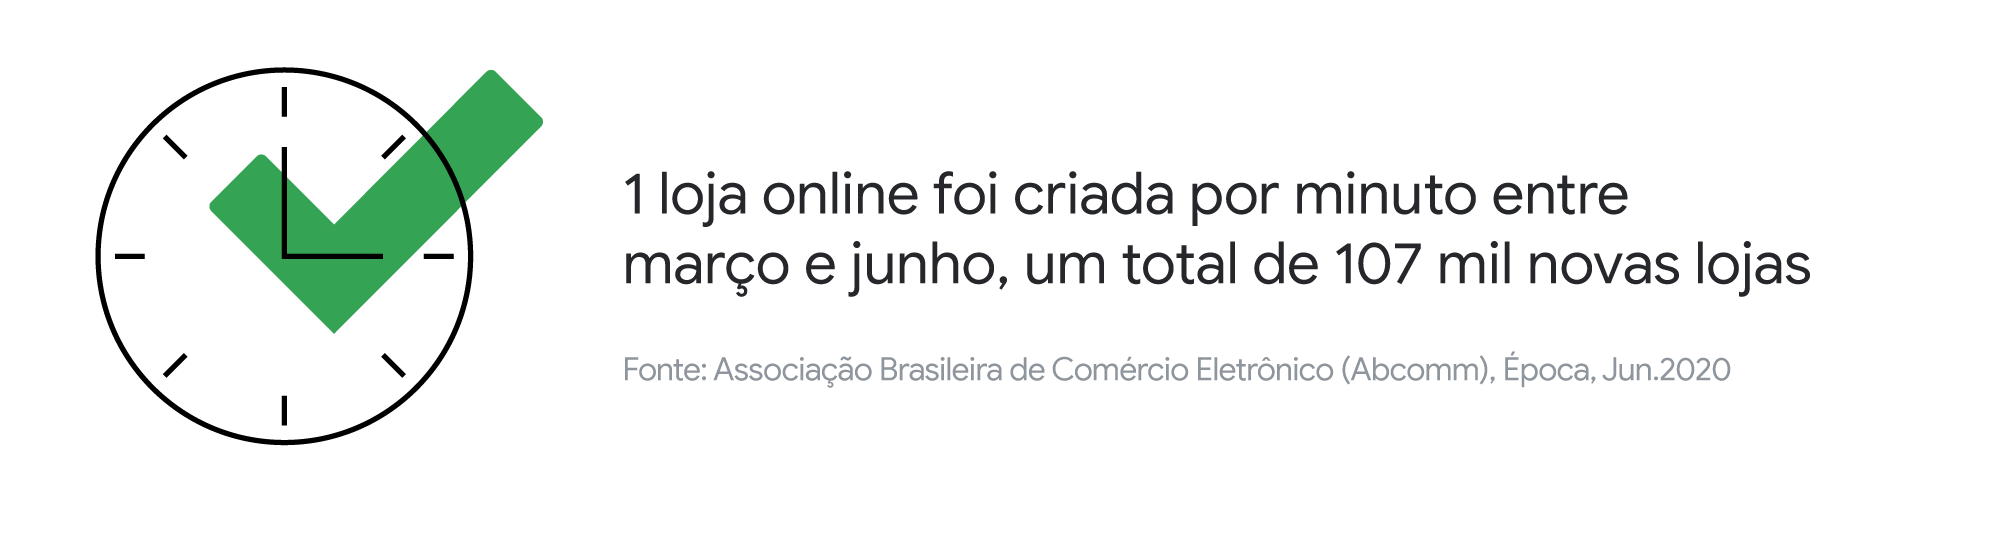 Décadas em semanas: a migração do consumo brasileiro para o digital